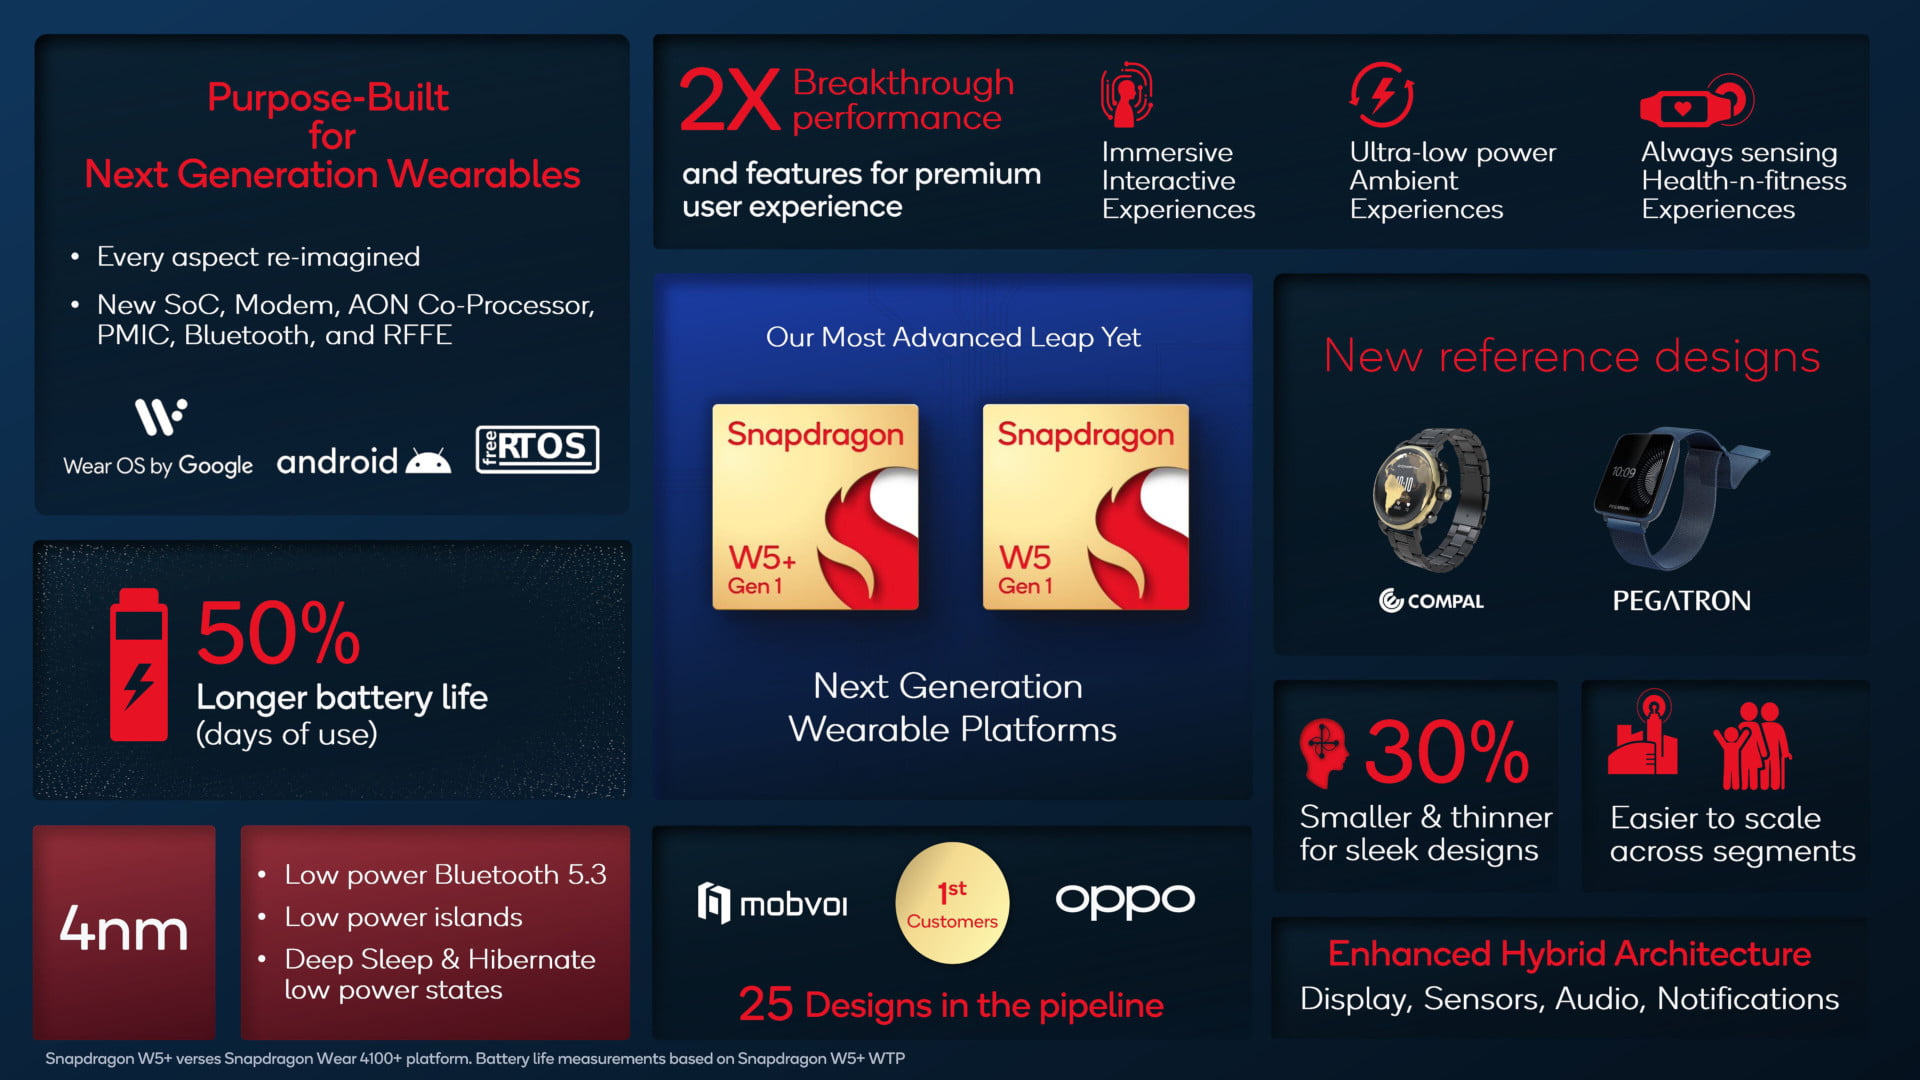 Qualcomm Snapdragon W5 Gen 1 Plus features